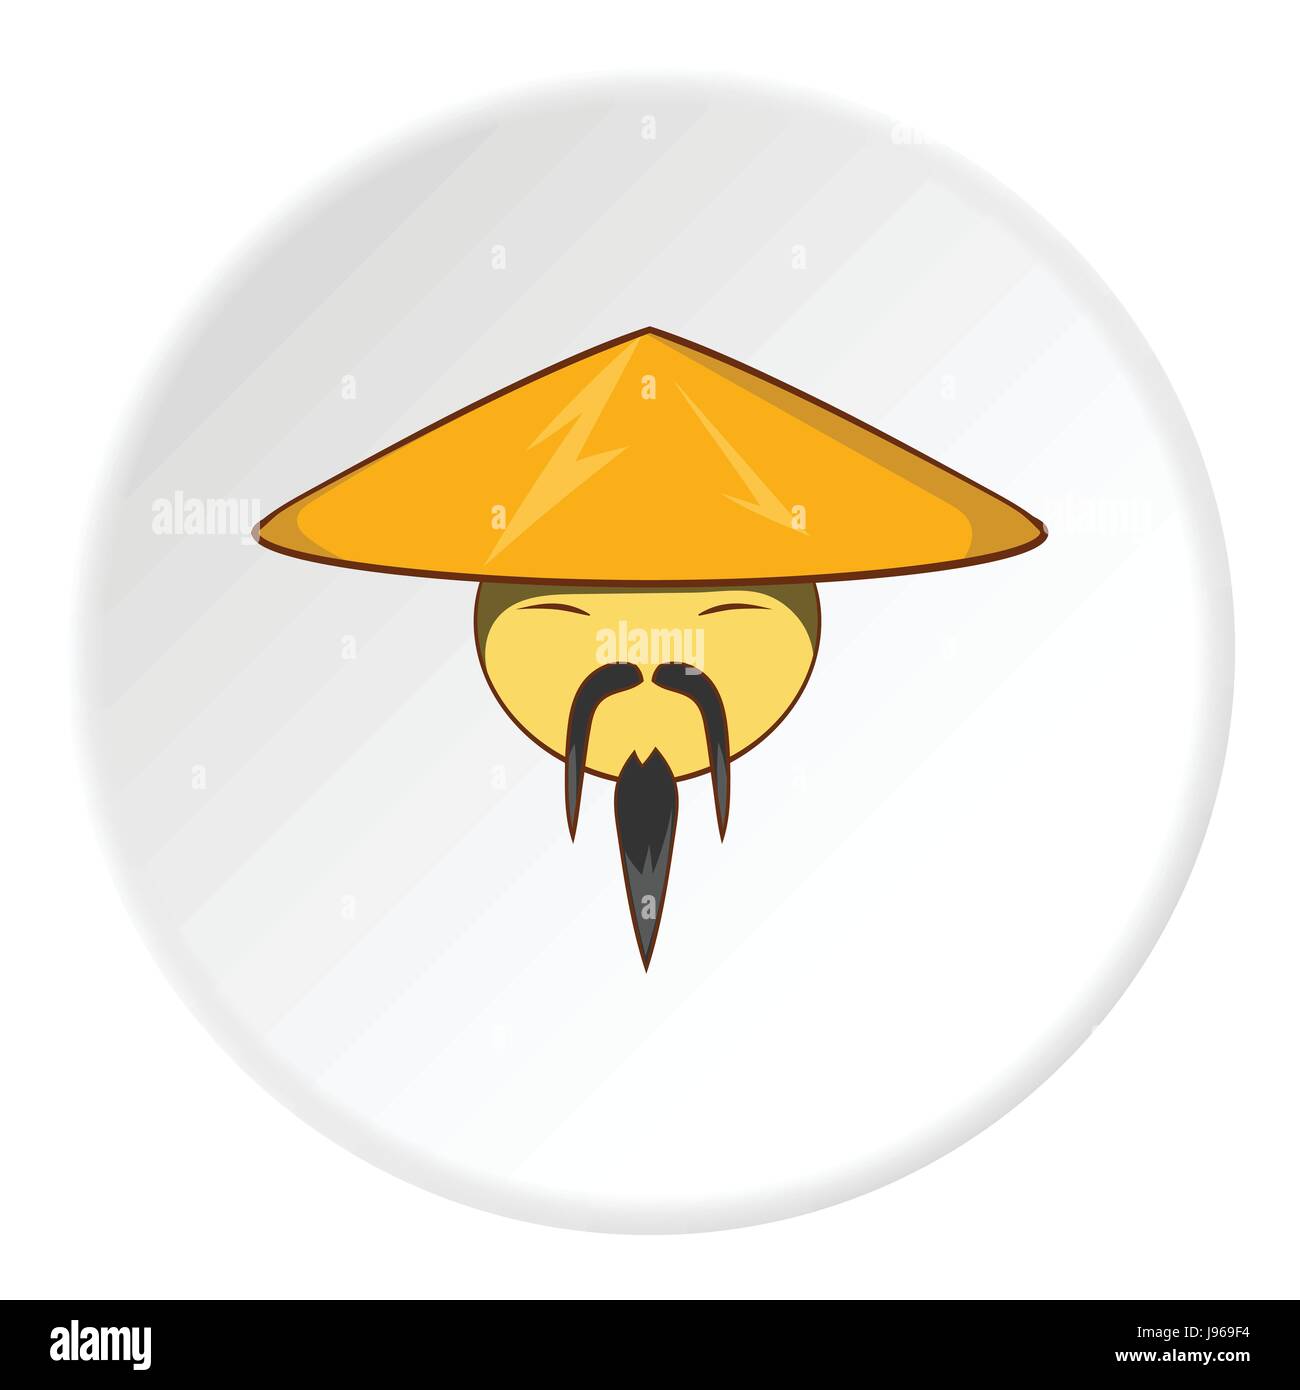 Asiatischer Mann in Hut-Symbol, cartoon-Stil Stock-Vektorgrafik - Alamy